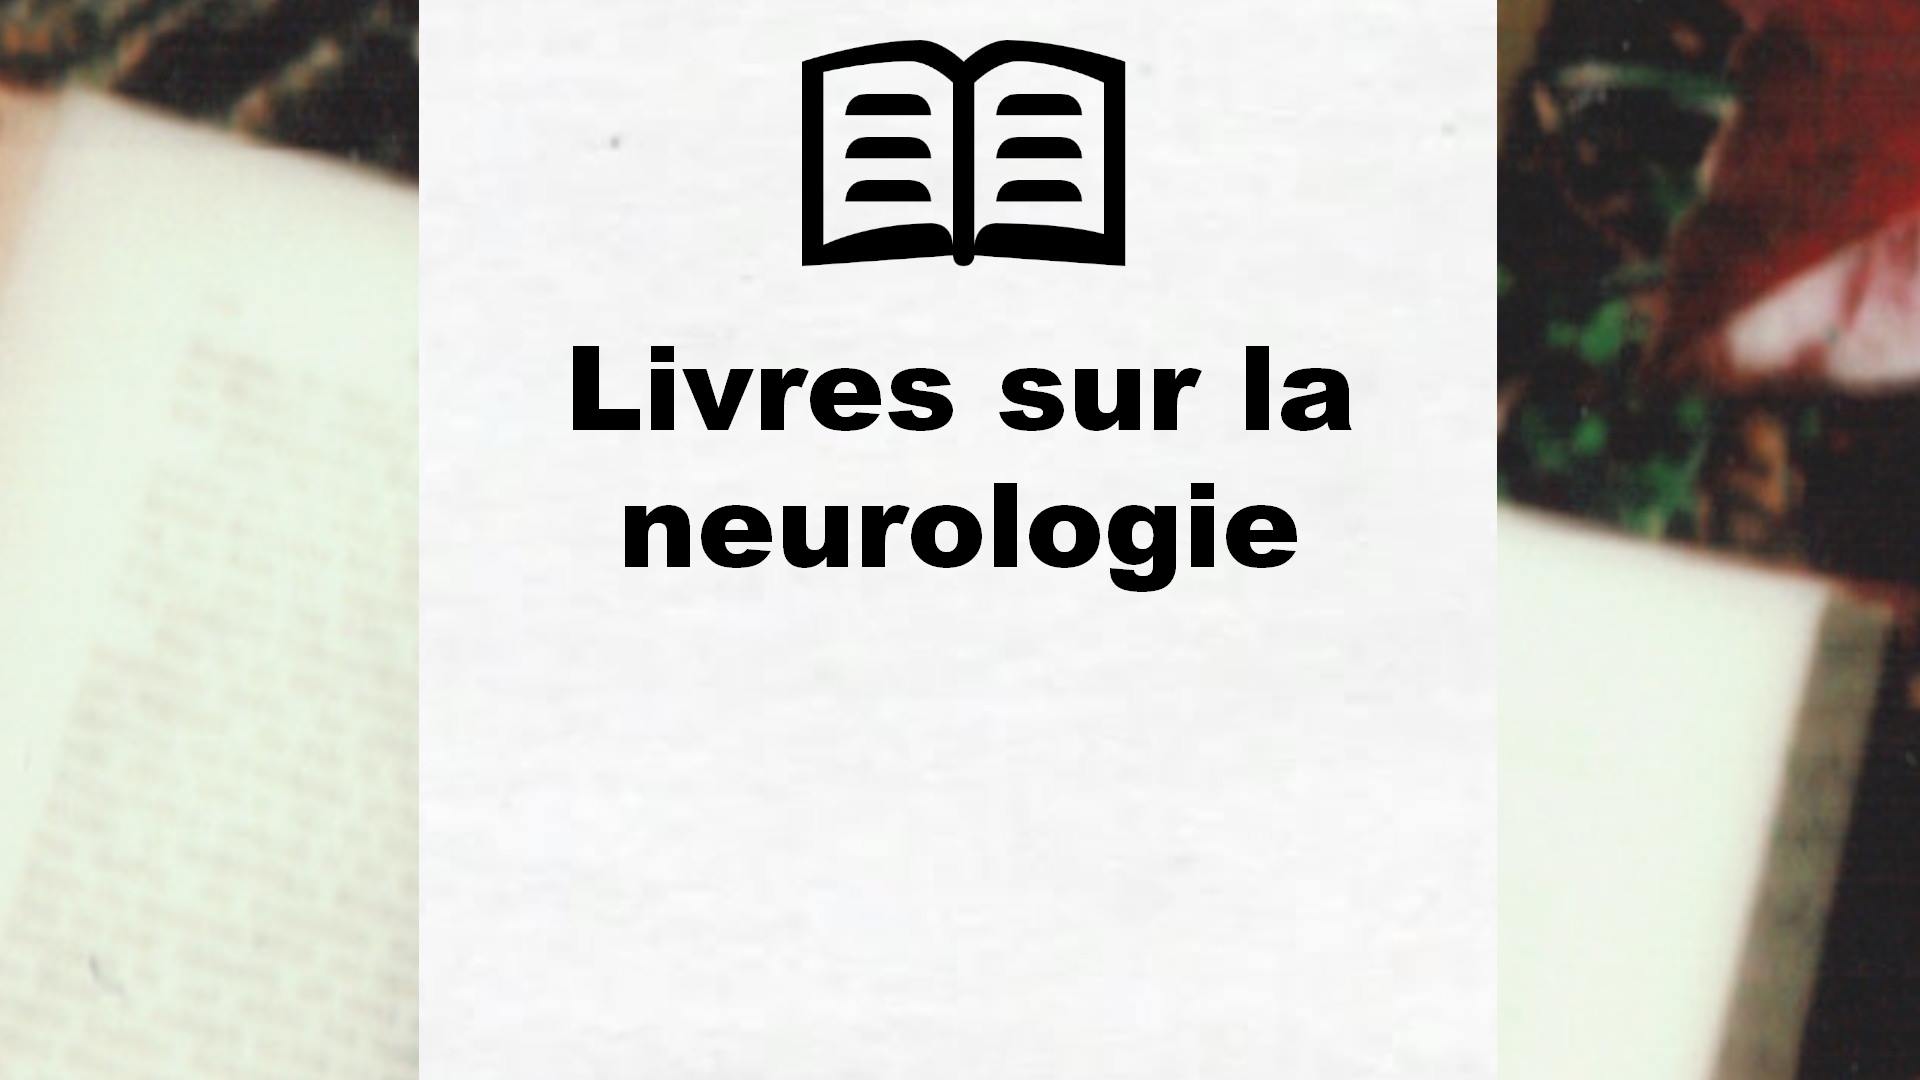 Livres sur la neurologie